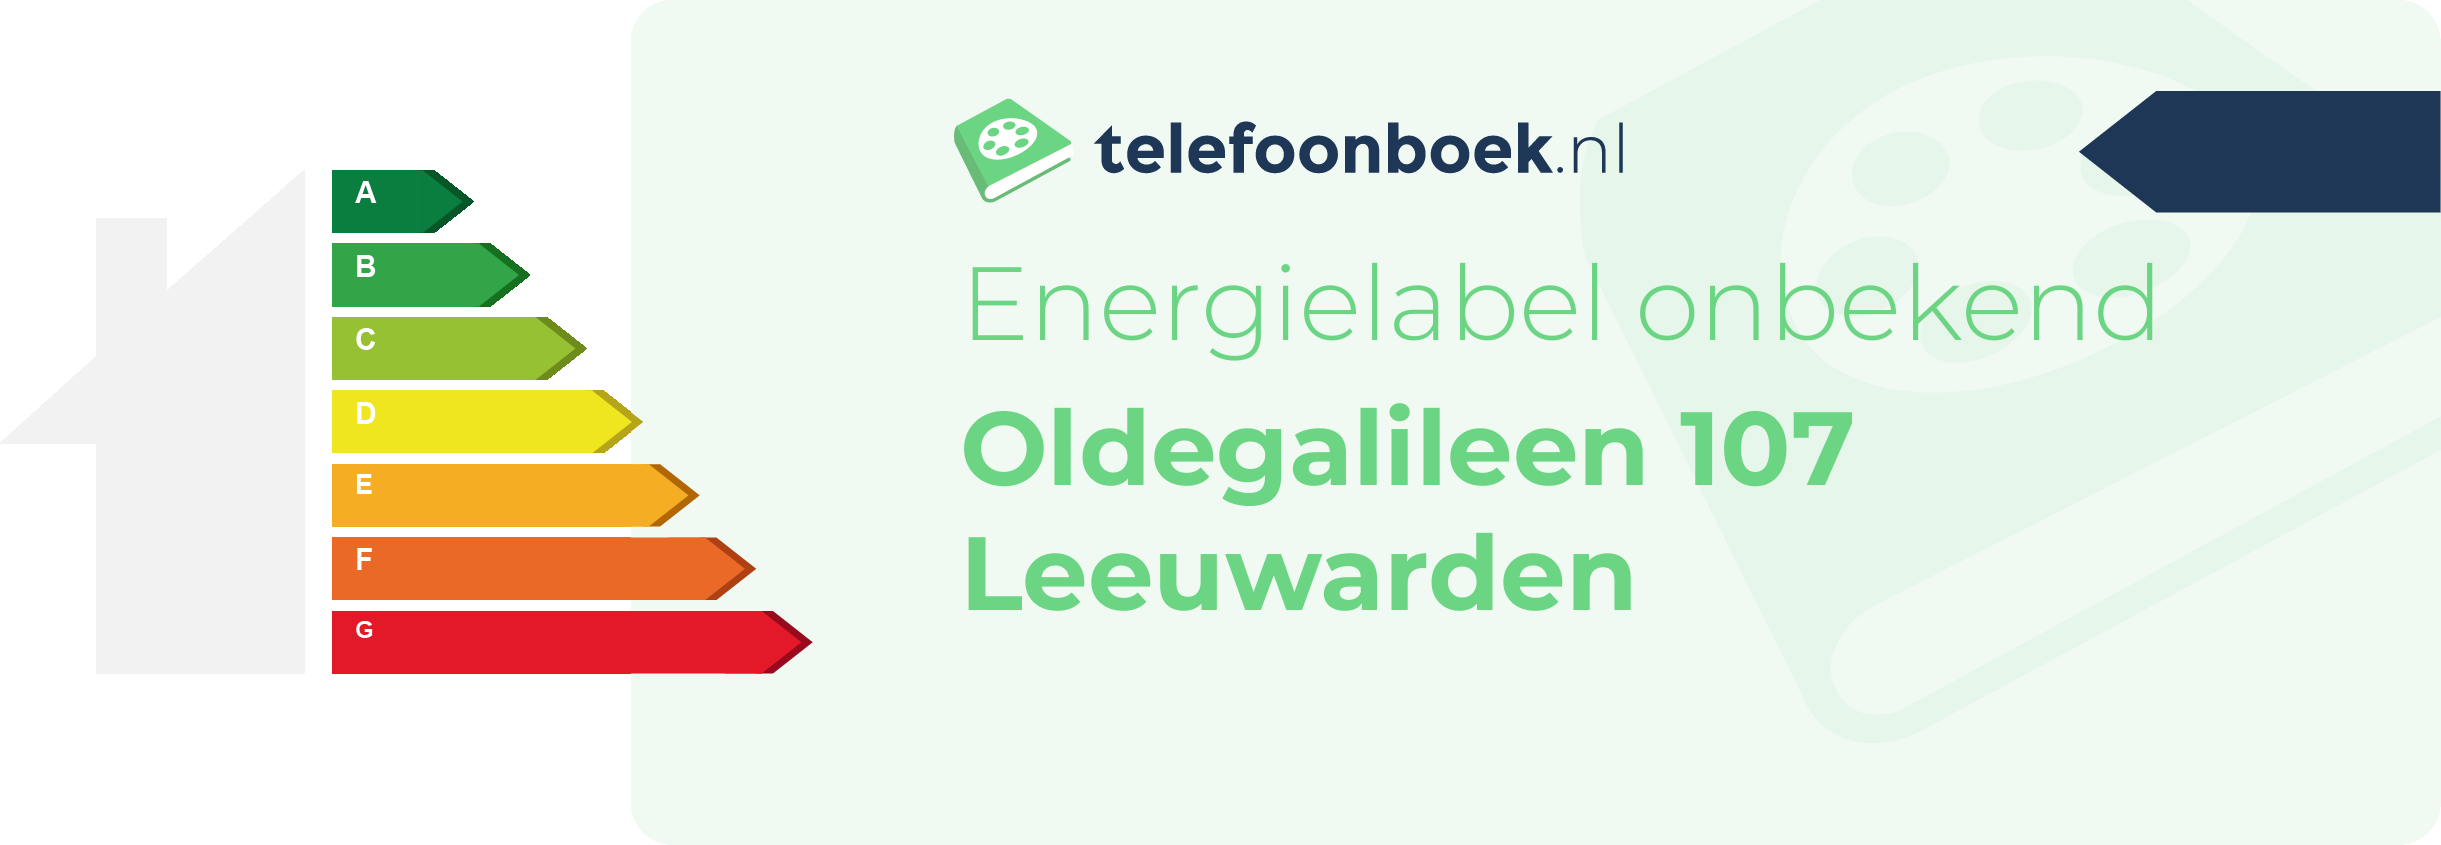 Energielabel Oldegalileen 107 Leeuwarden